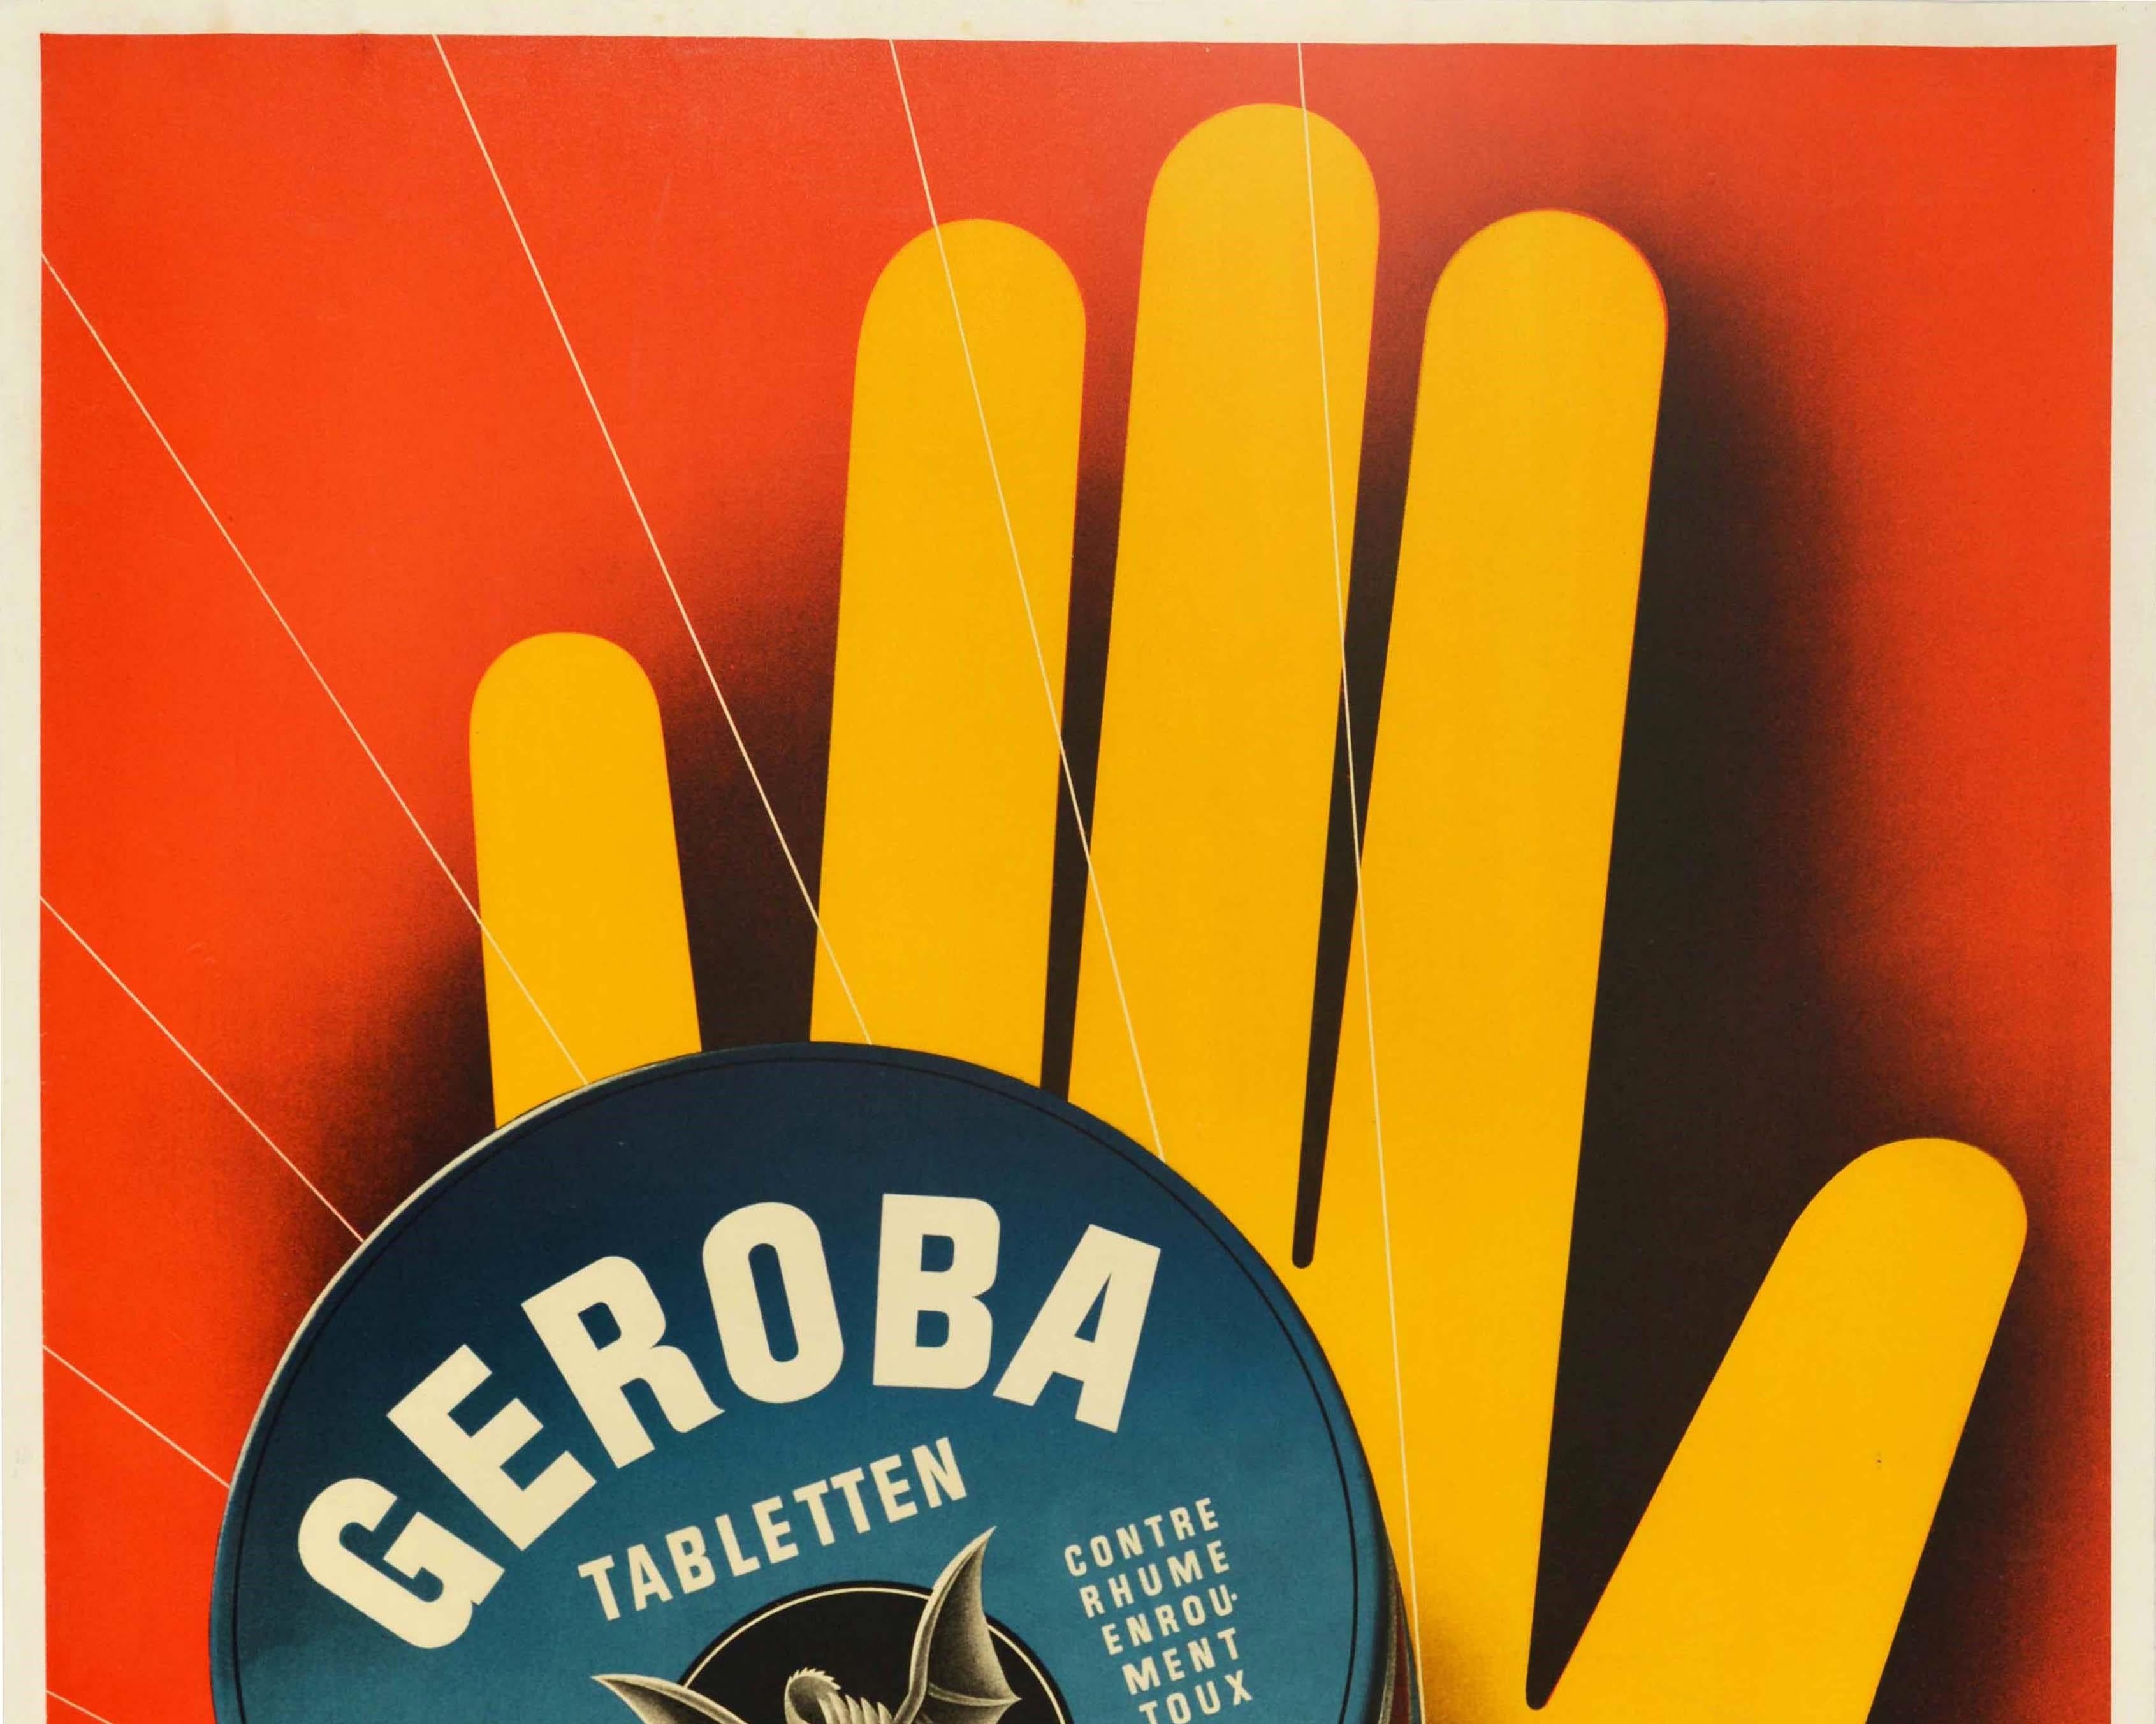 Originalplakat zur Werbung für Geroba Hustenbonbons mit einer großartigen grafischen Illustration von Edi Hauri (1911-1988), die eine gelbe Hand als Stoppsignal auf rotem Hintergrund zeigt, die eine Geroba-Tabletten-Dose hält, mit dem mythischen